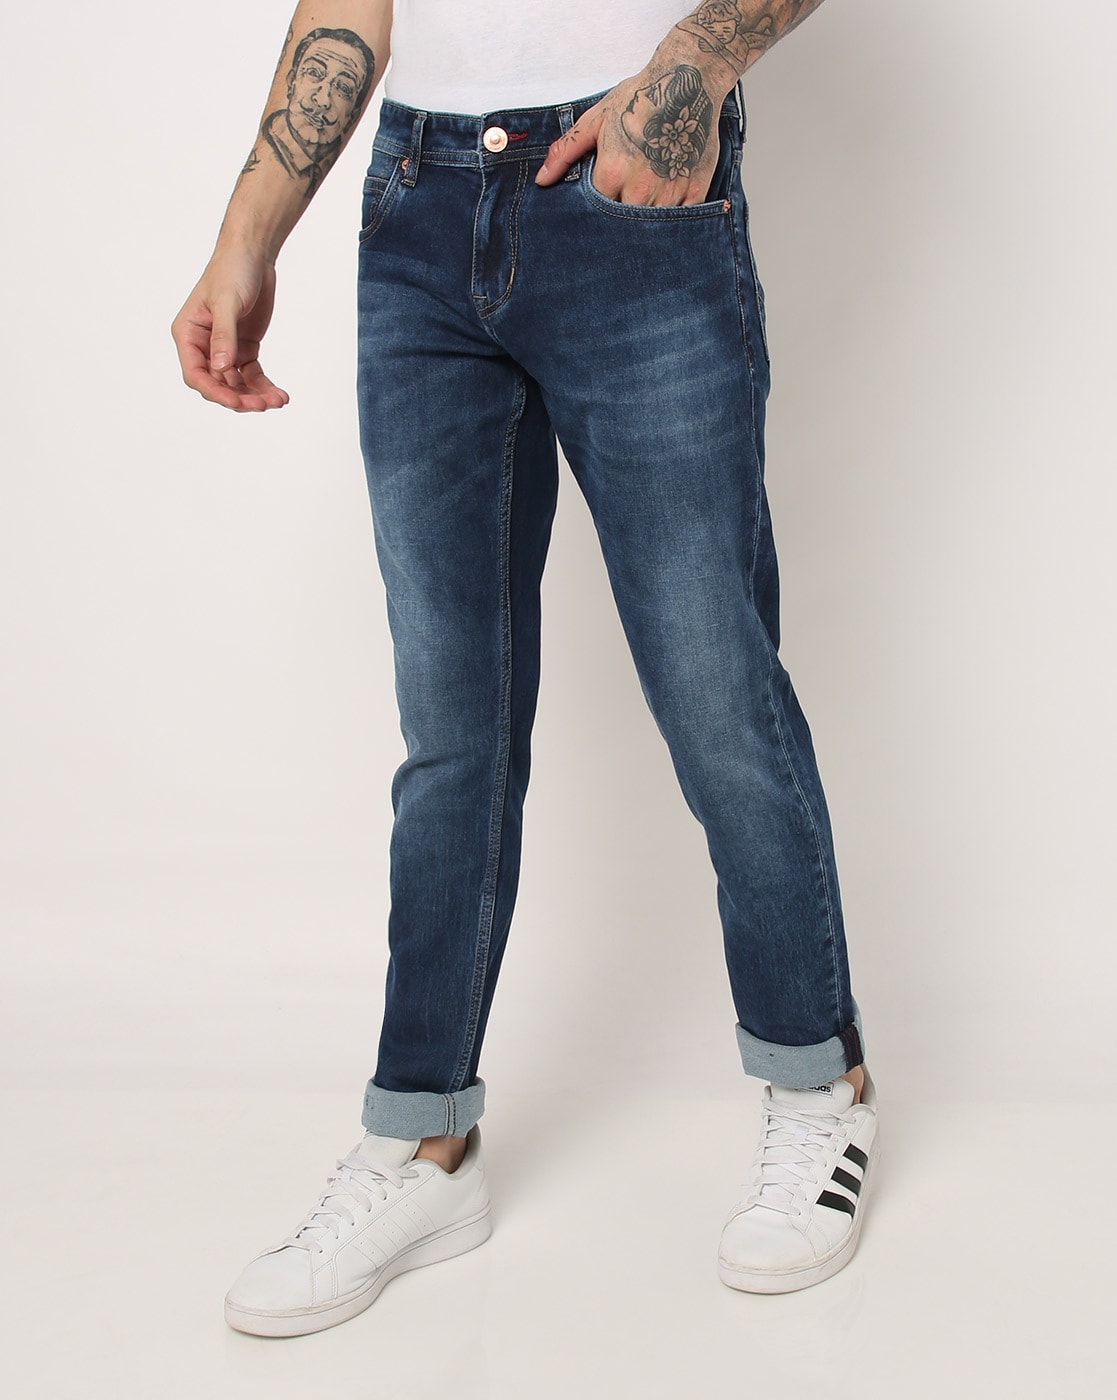 Buy Denim Blue Jeans for Men by LEE COOPER Online  Ajiocom